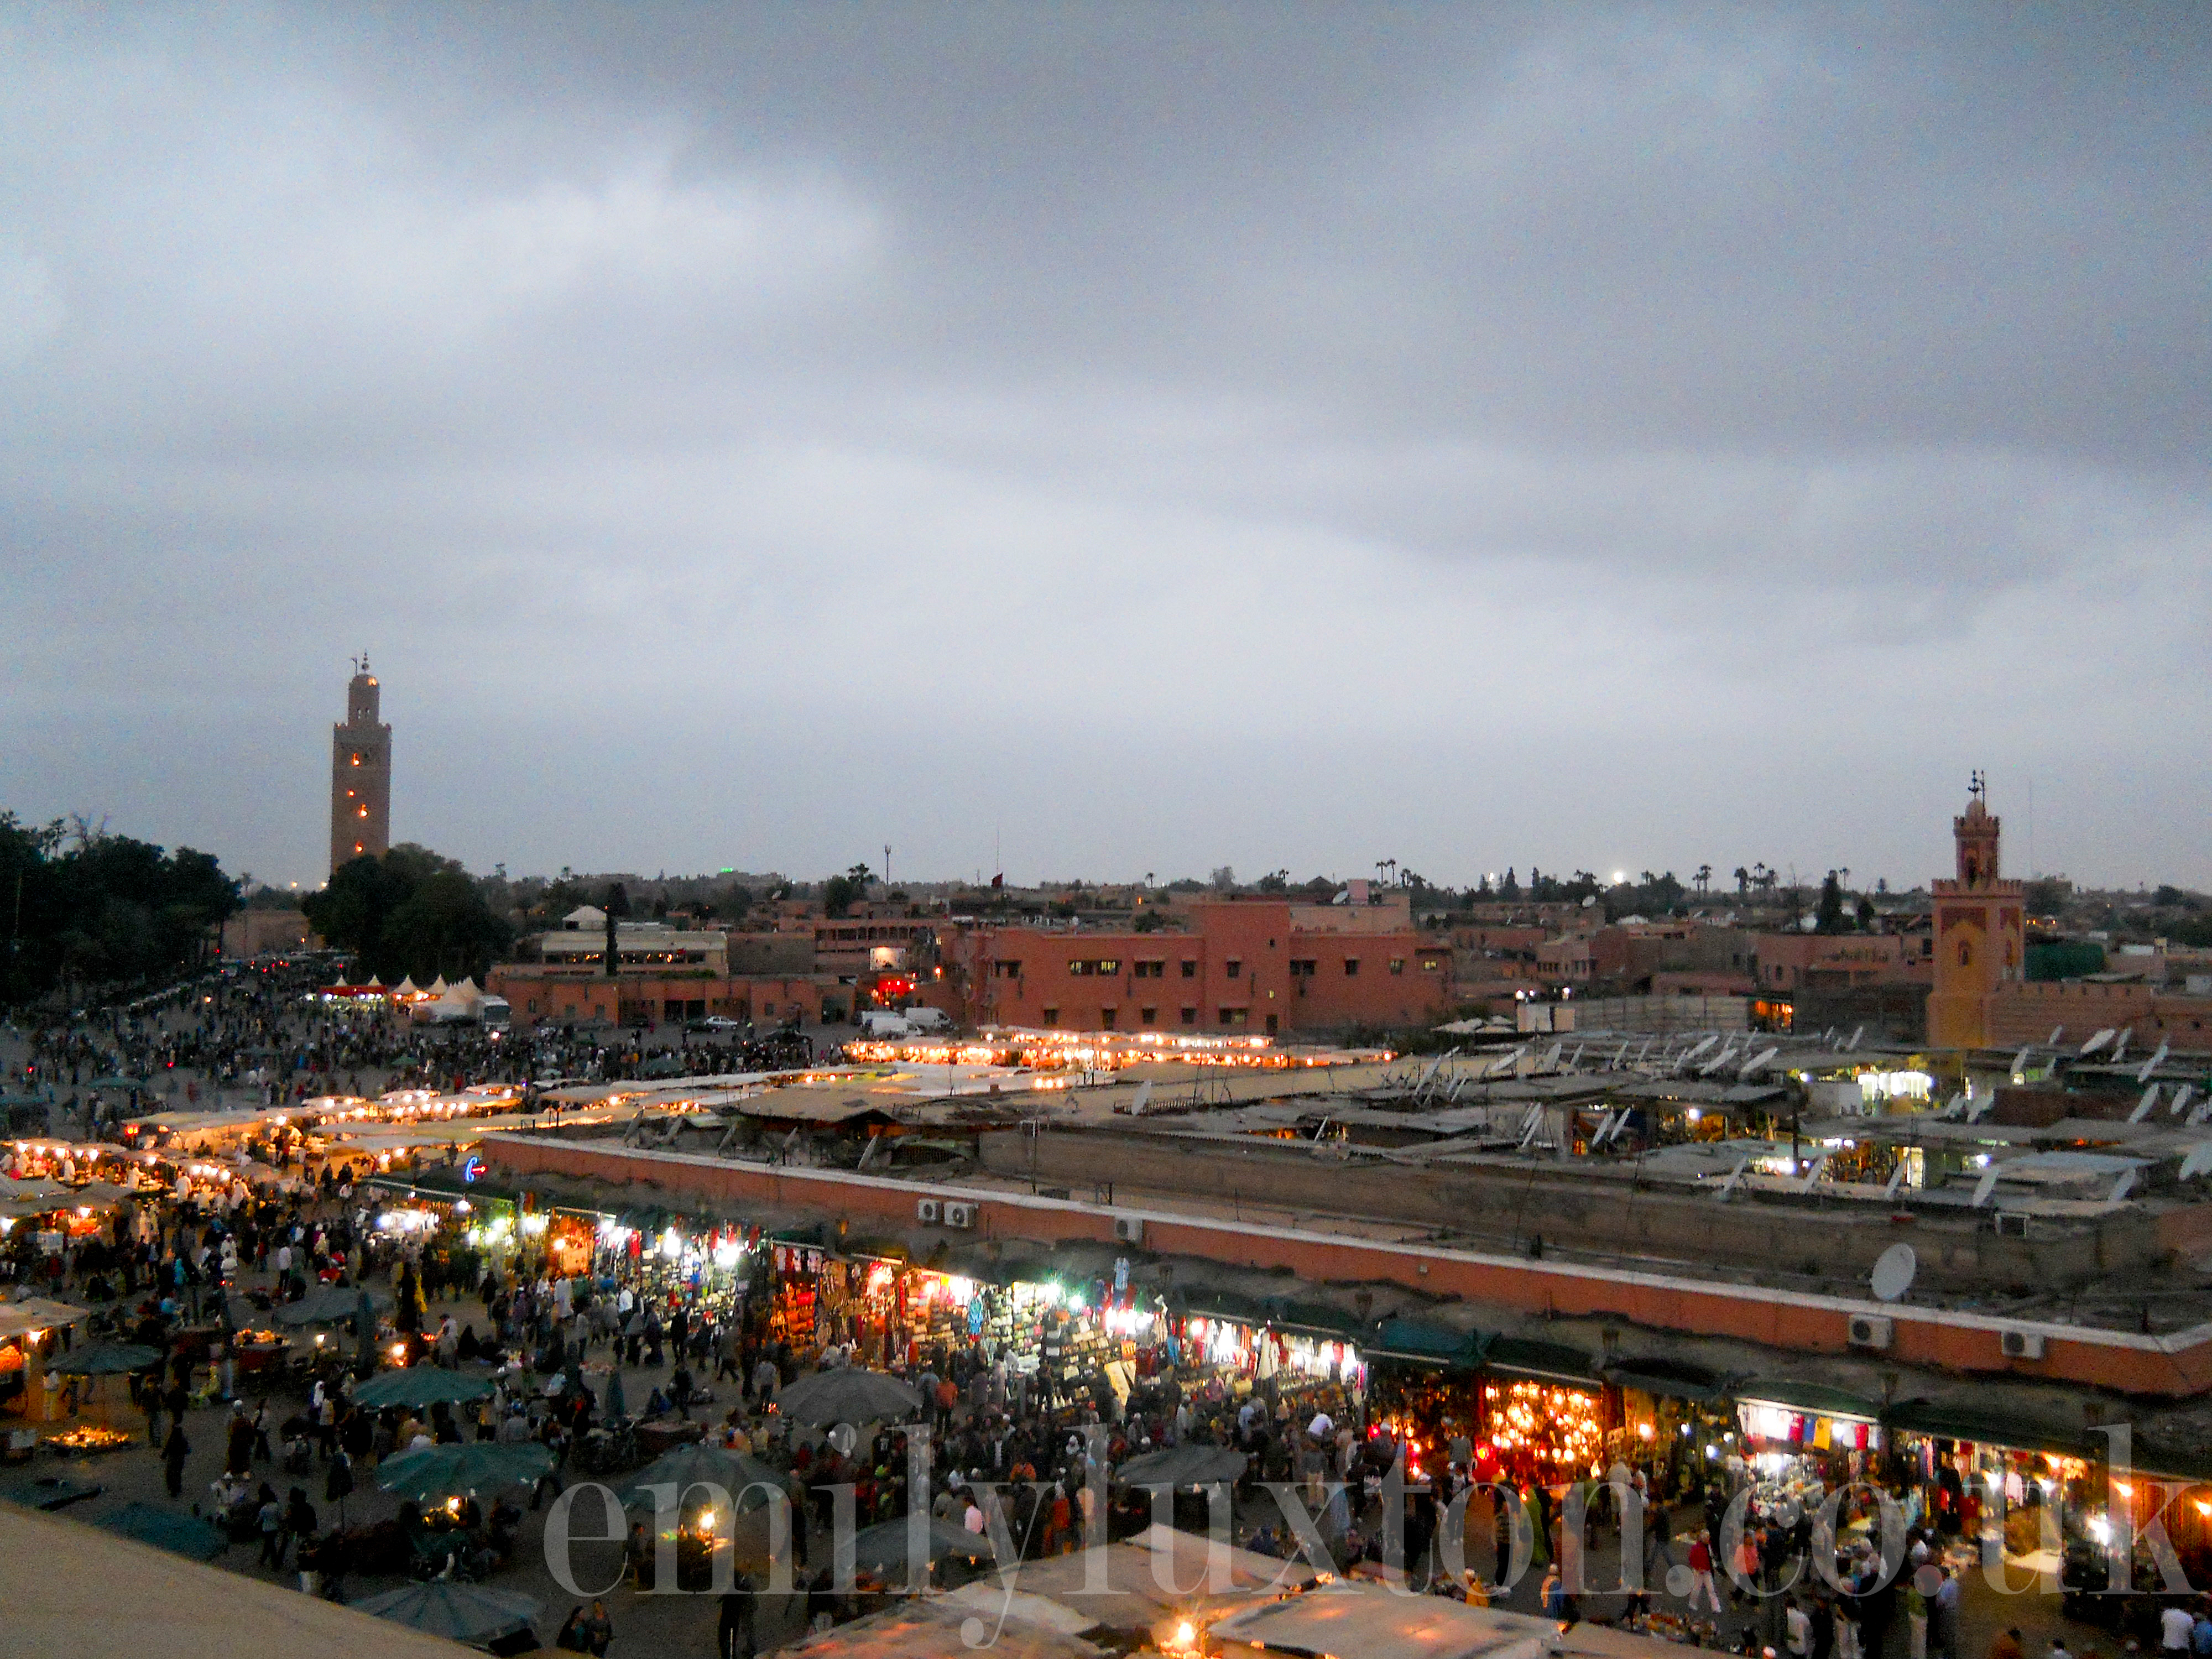 Morocco Diaries - Marrakech, Atlas Mountains, and the Sahara